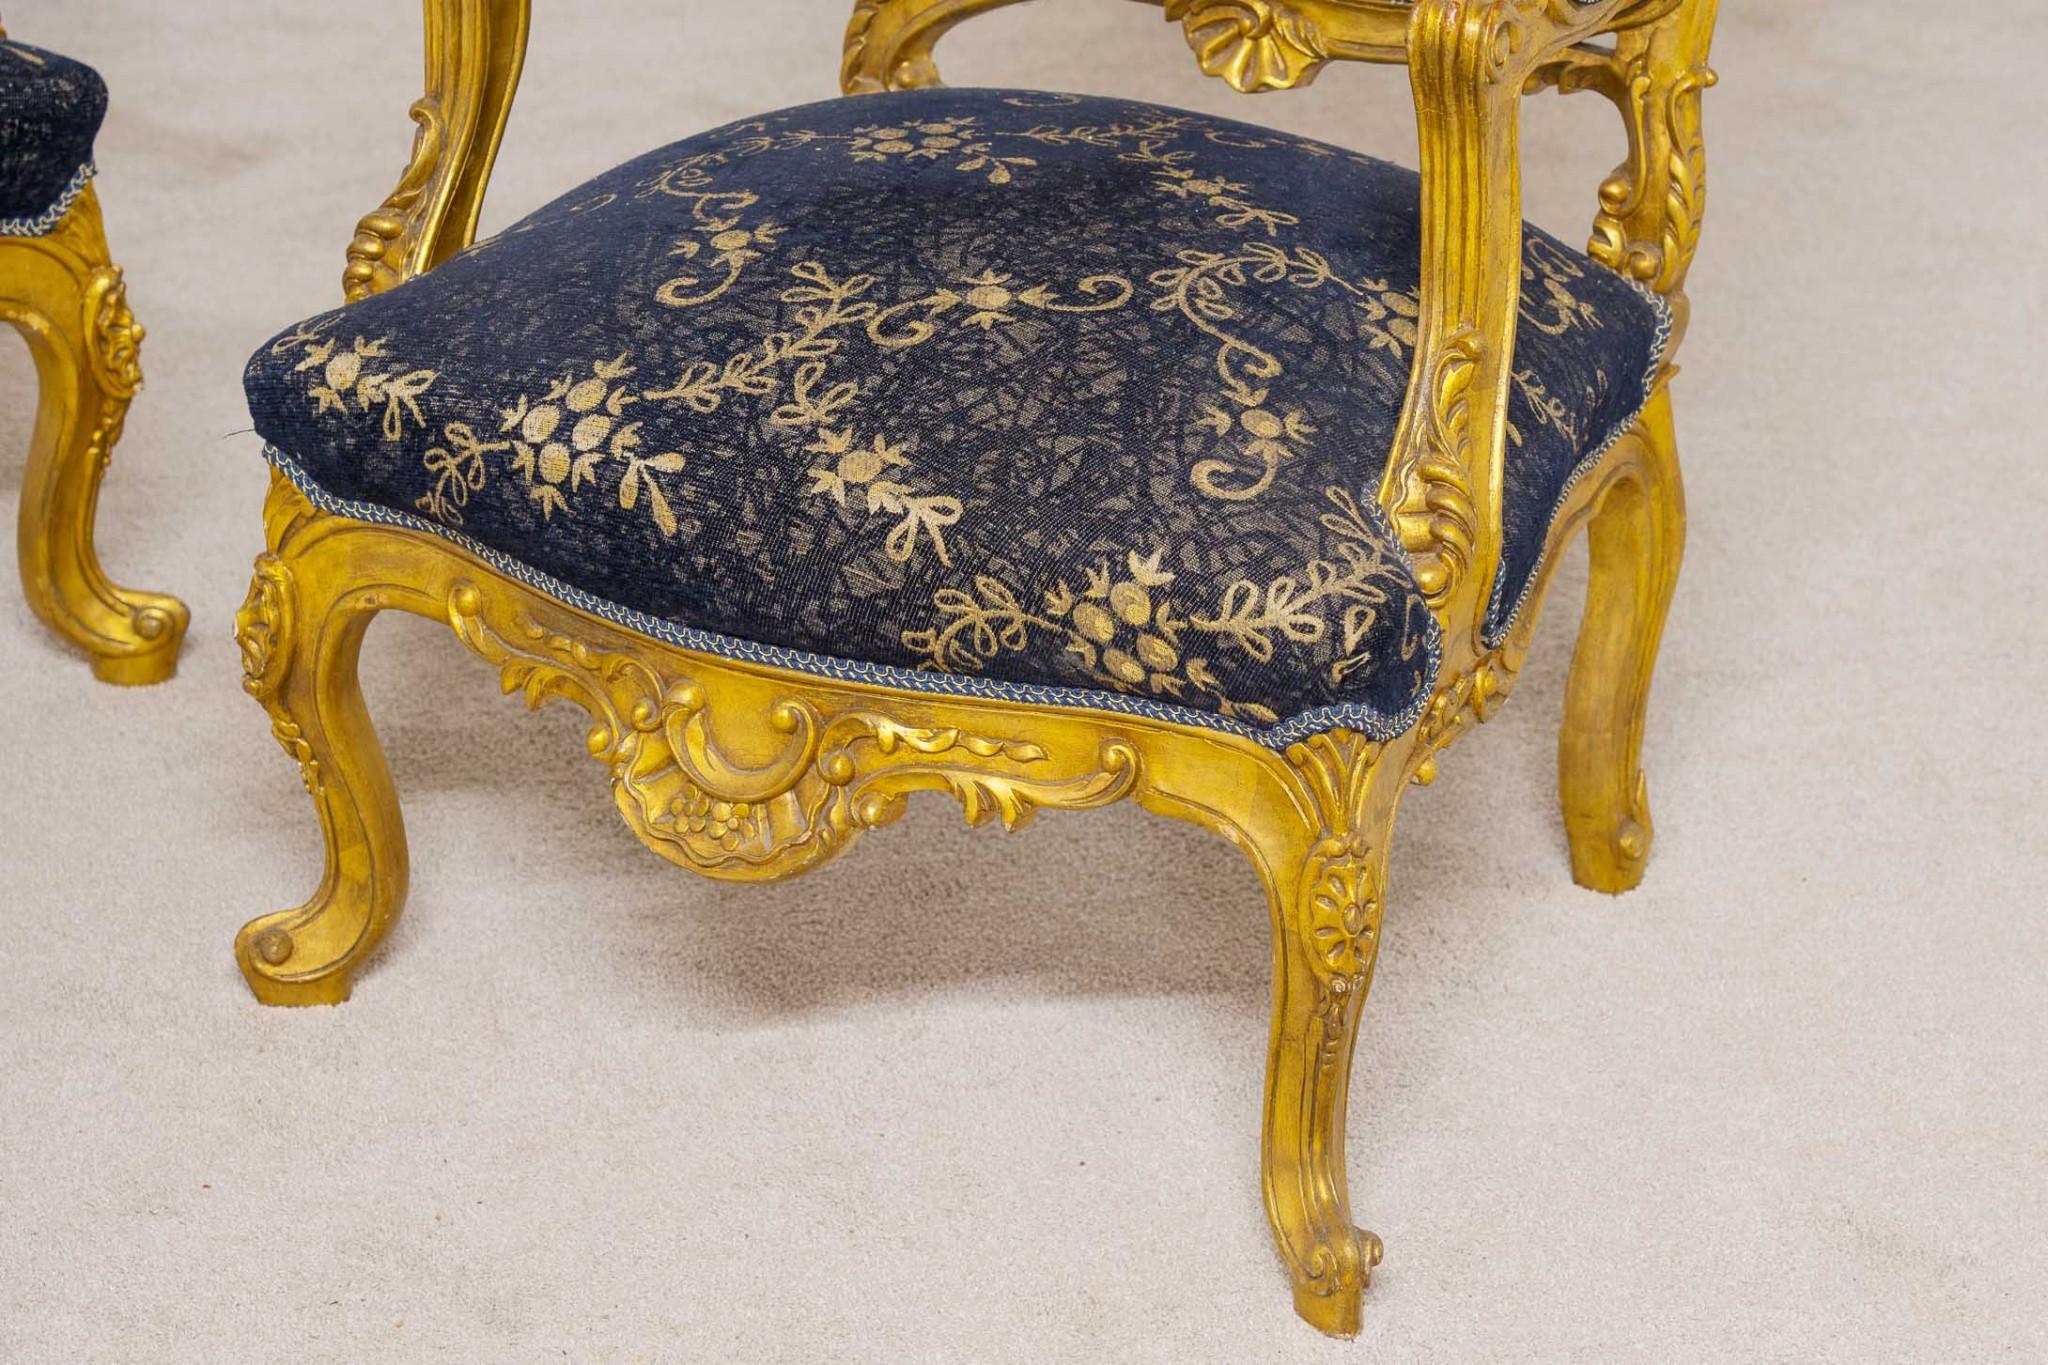 Paire de fauteuils rococo dorés et élégants
Les bras très larges permettent de s'asseoir confortablement
Les cadres sculptés ornementalement sont très détaillés avec des motifs floraux.
Rembourré avec un imprimé floral, il est propre et ne dégage